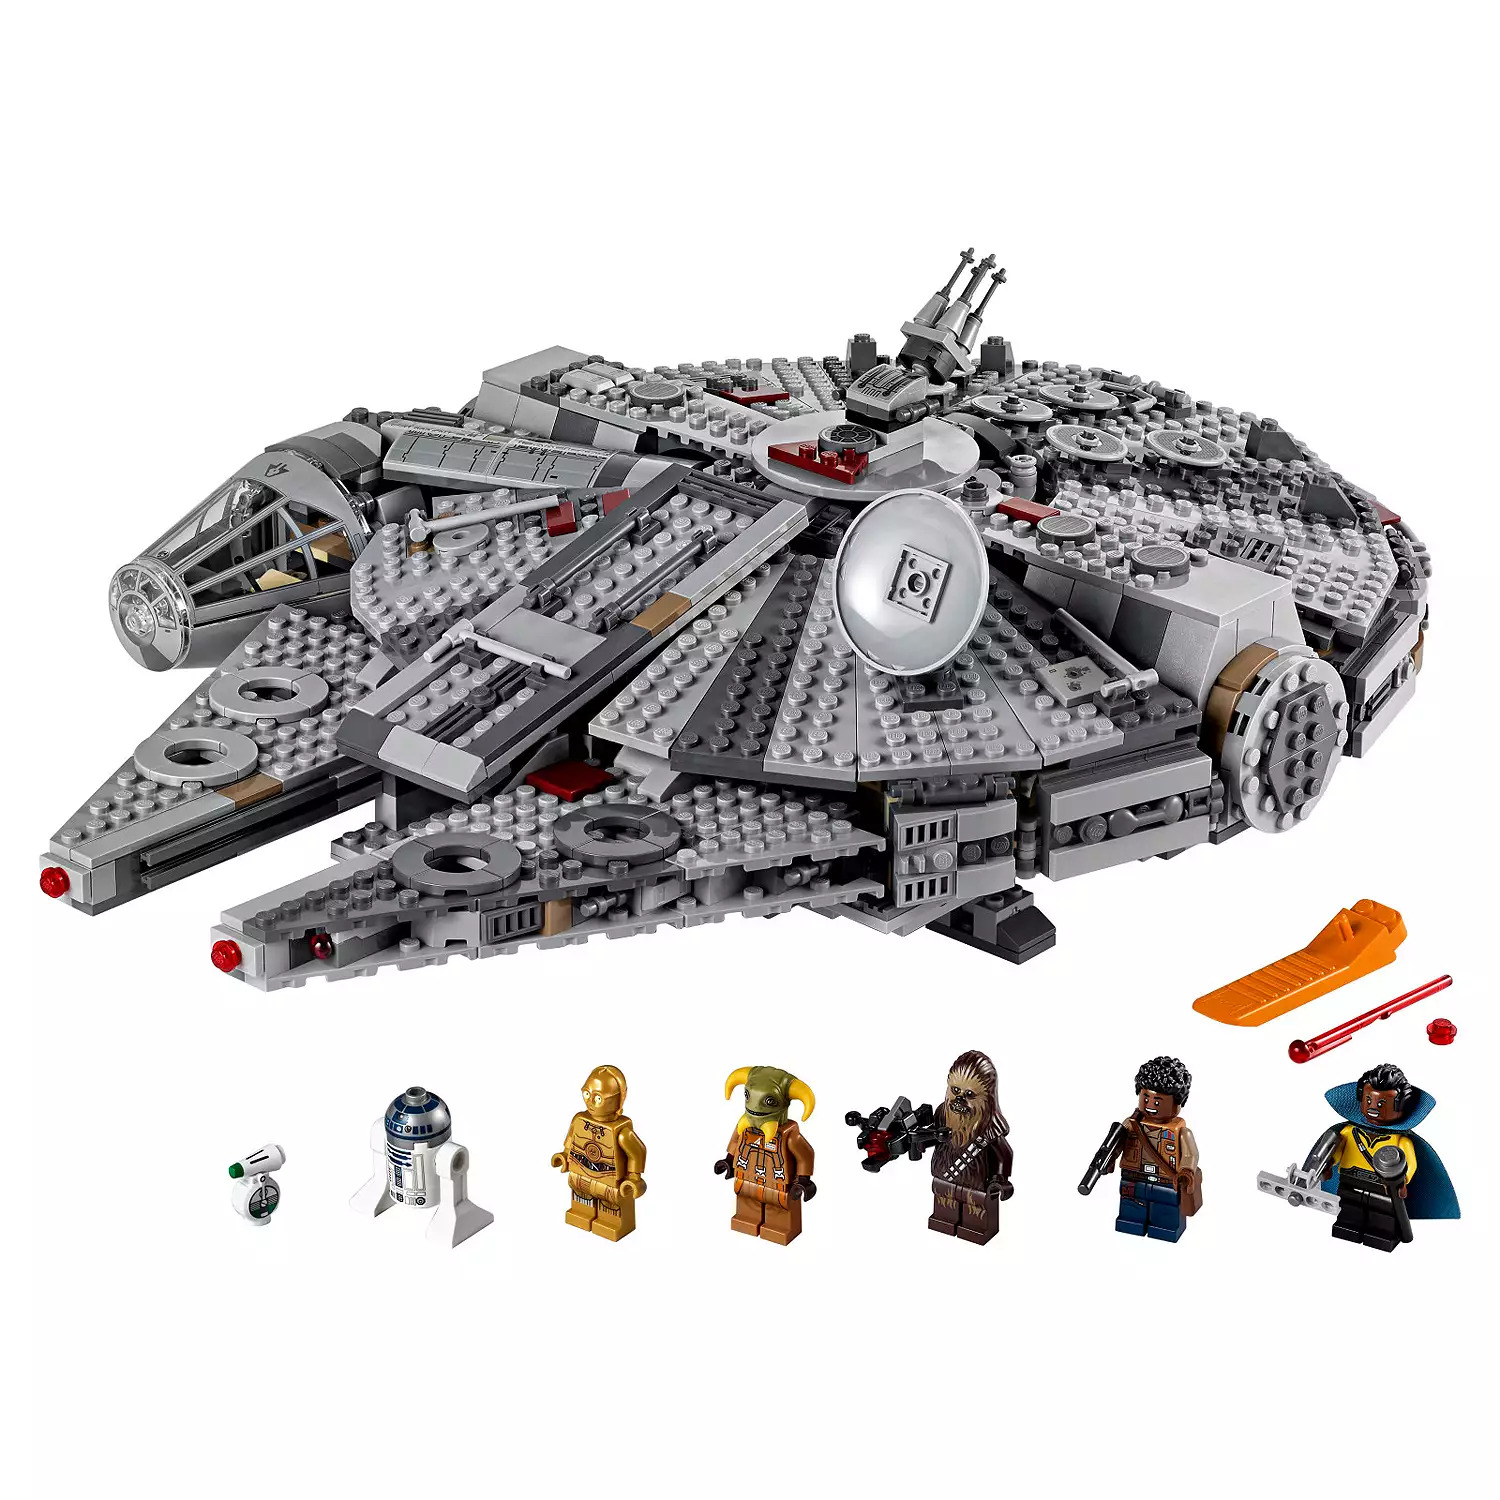 Star Wars Millennium Falcon Lego Set